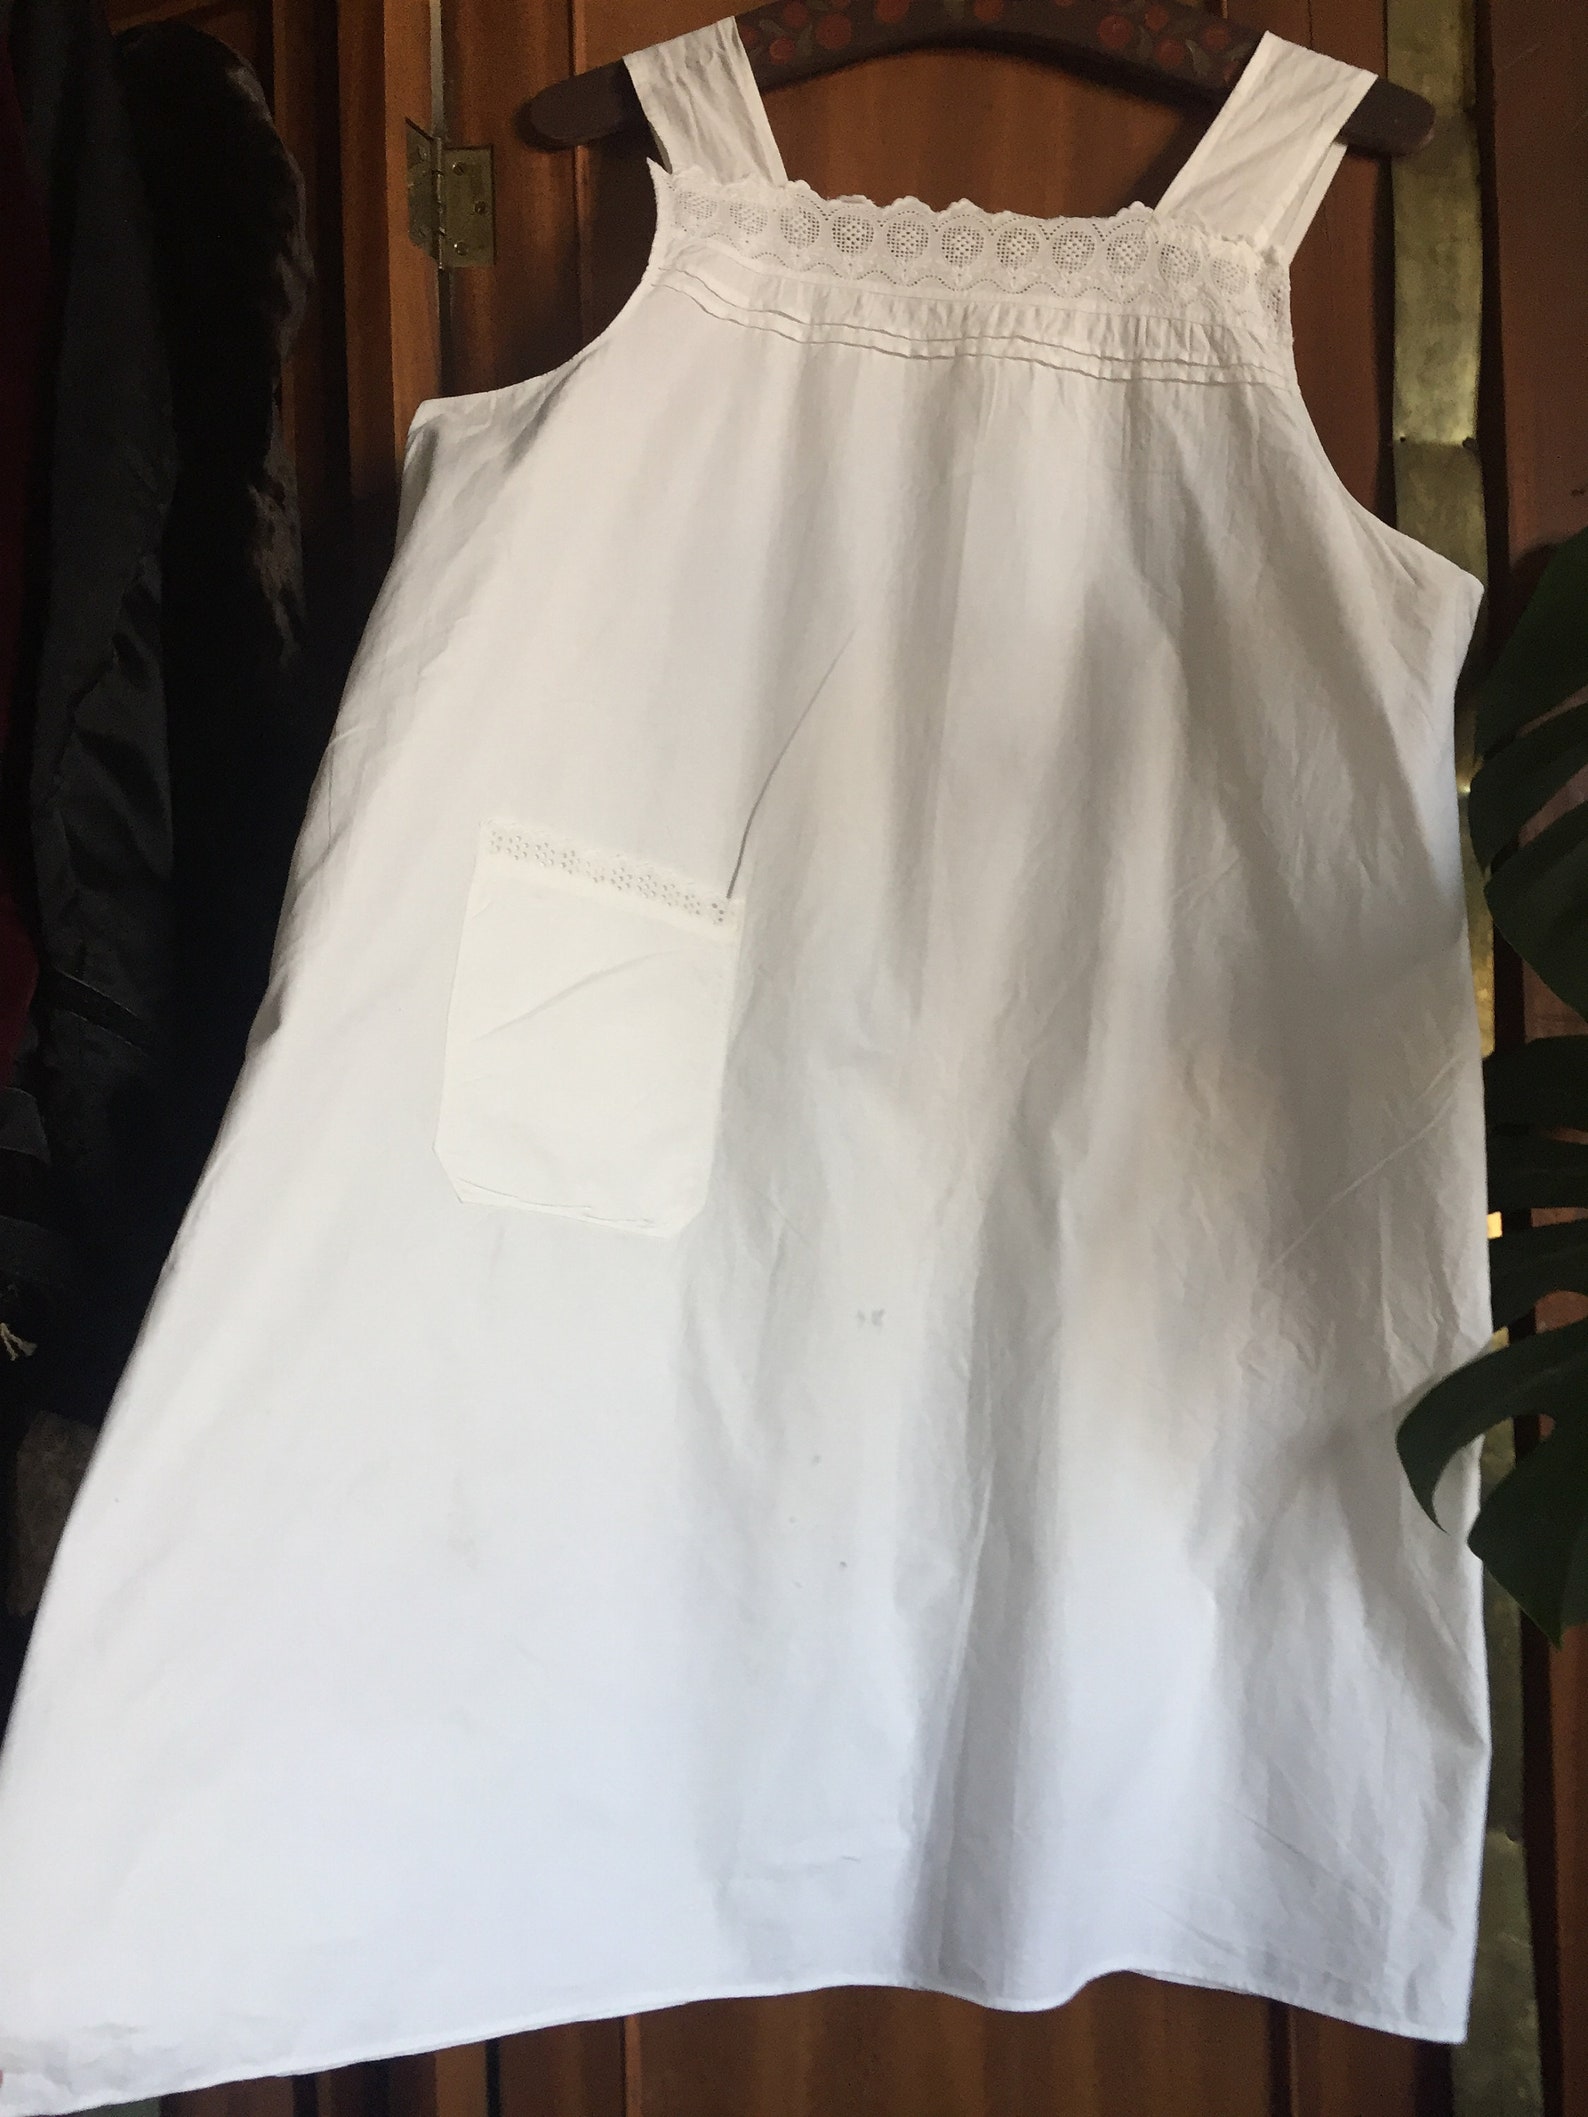 Antique apron 1900s white cotton lace apron with pocket | Etsy